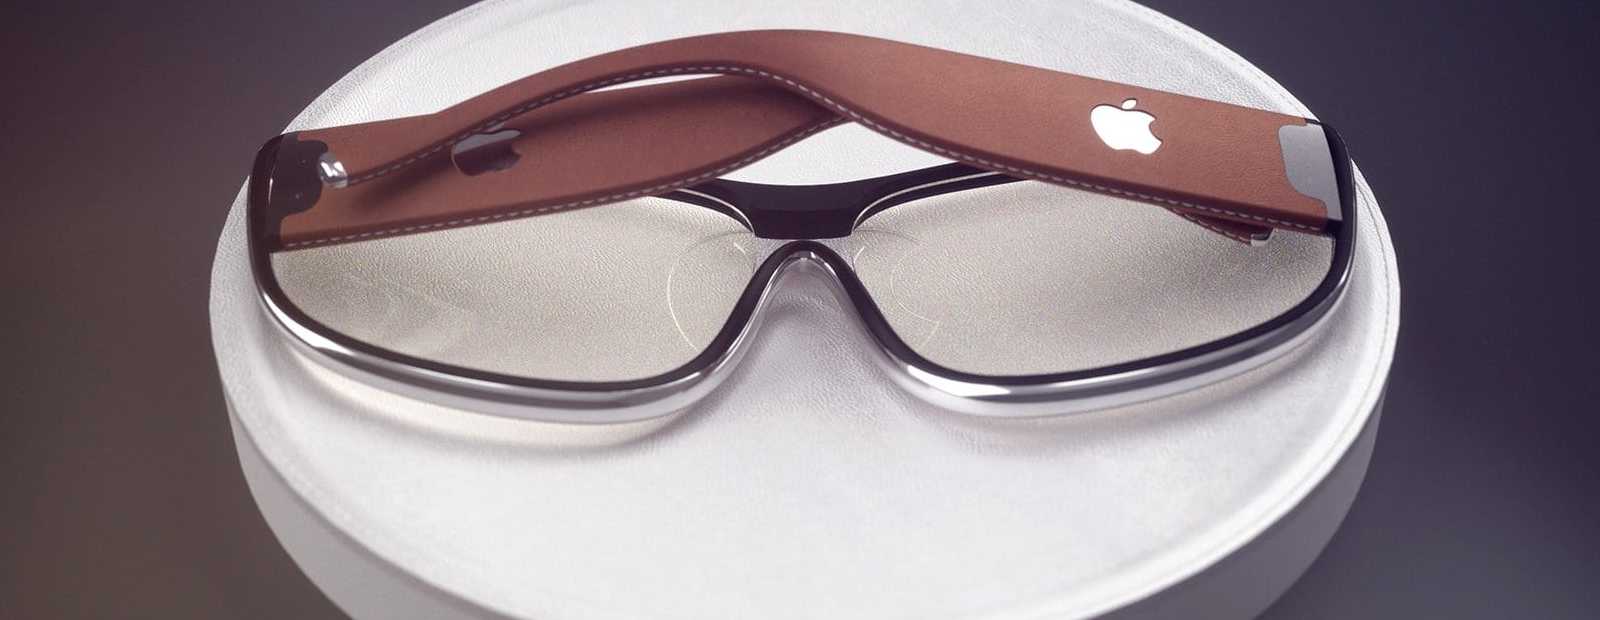 Окуляри Apple Glasses